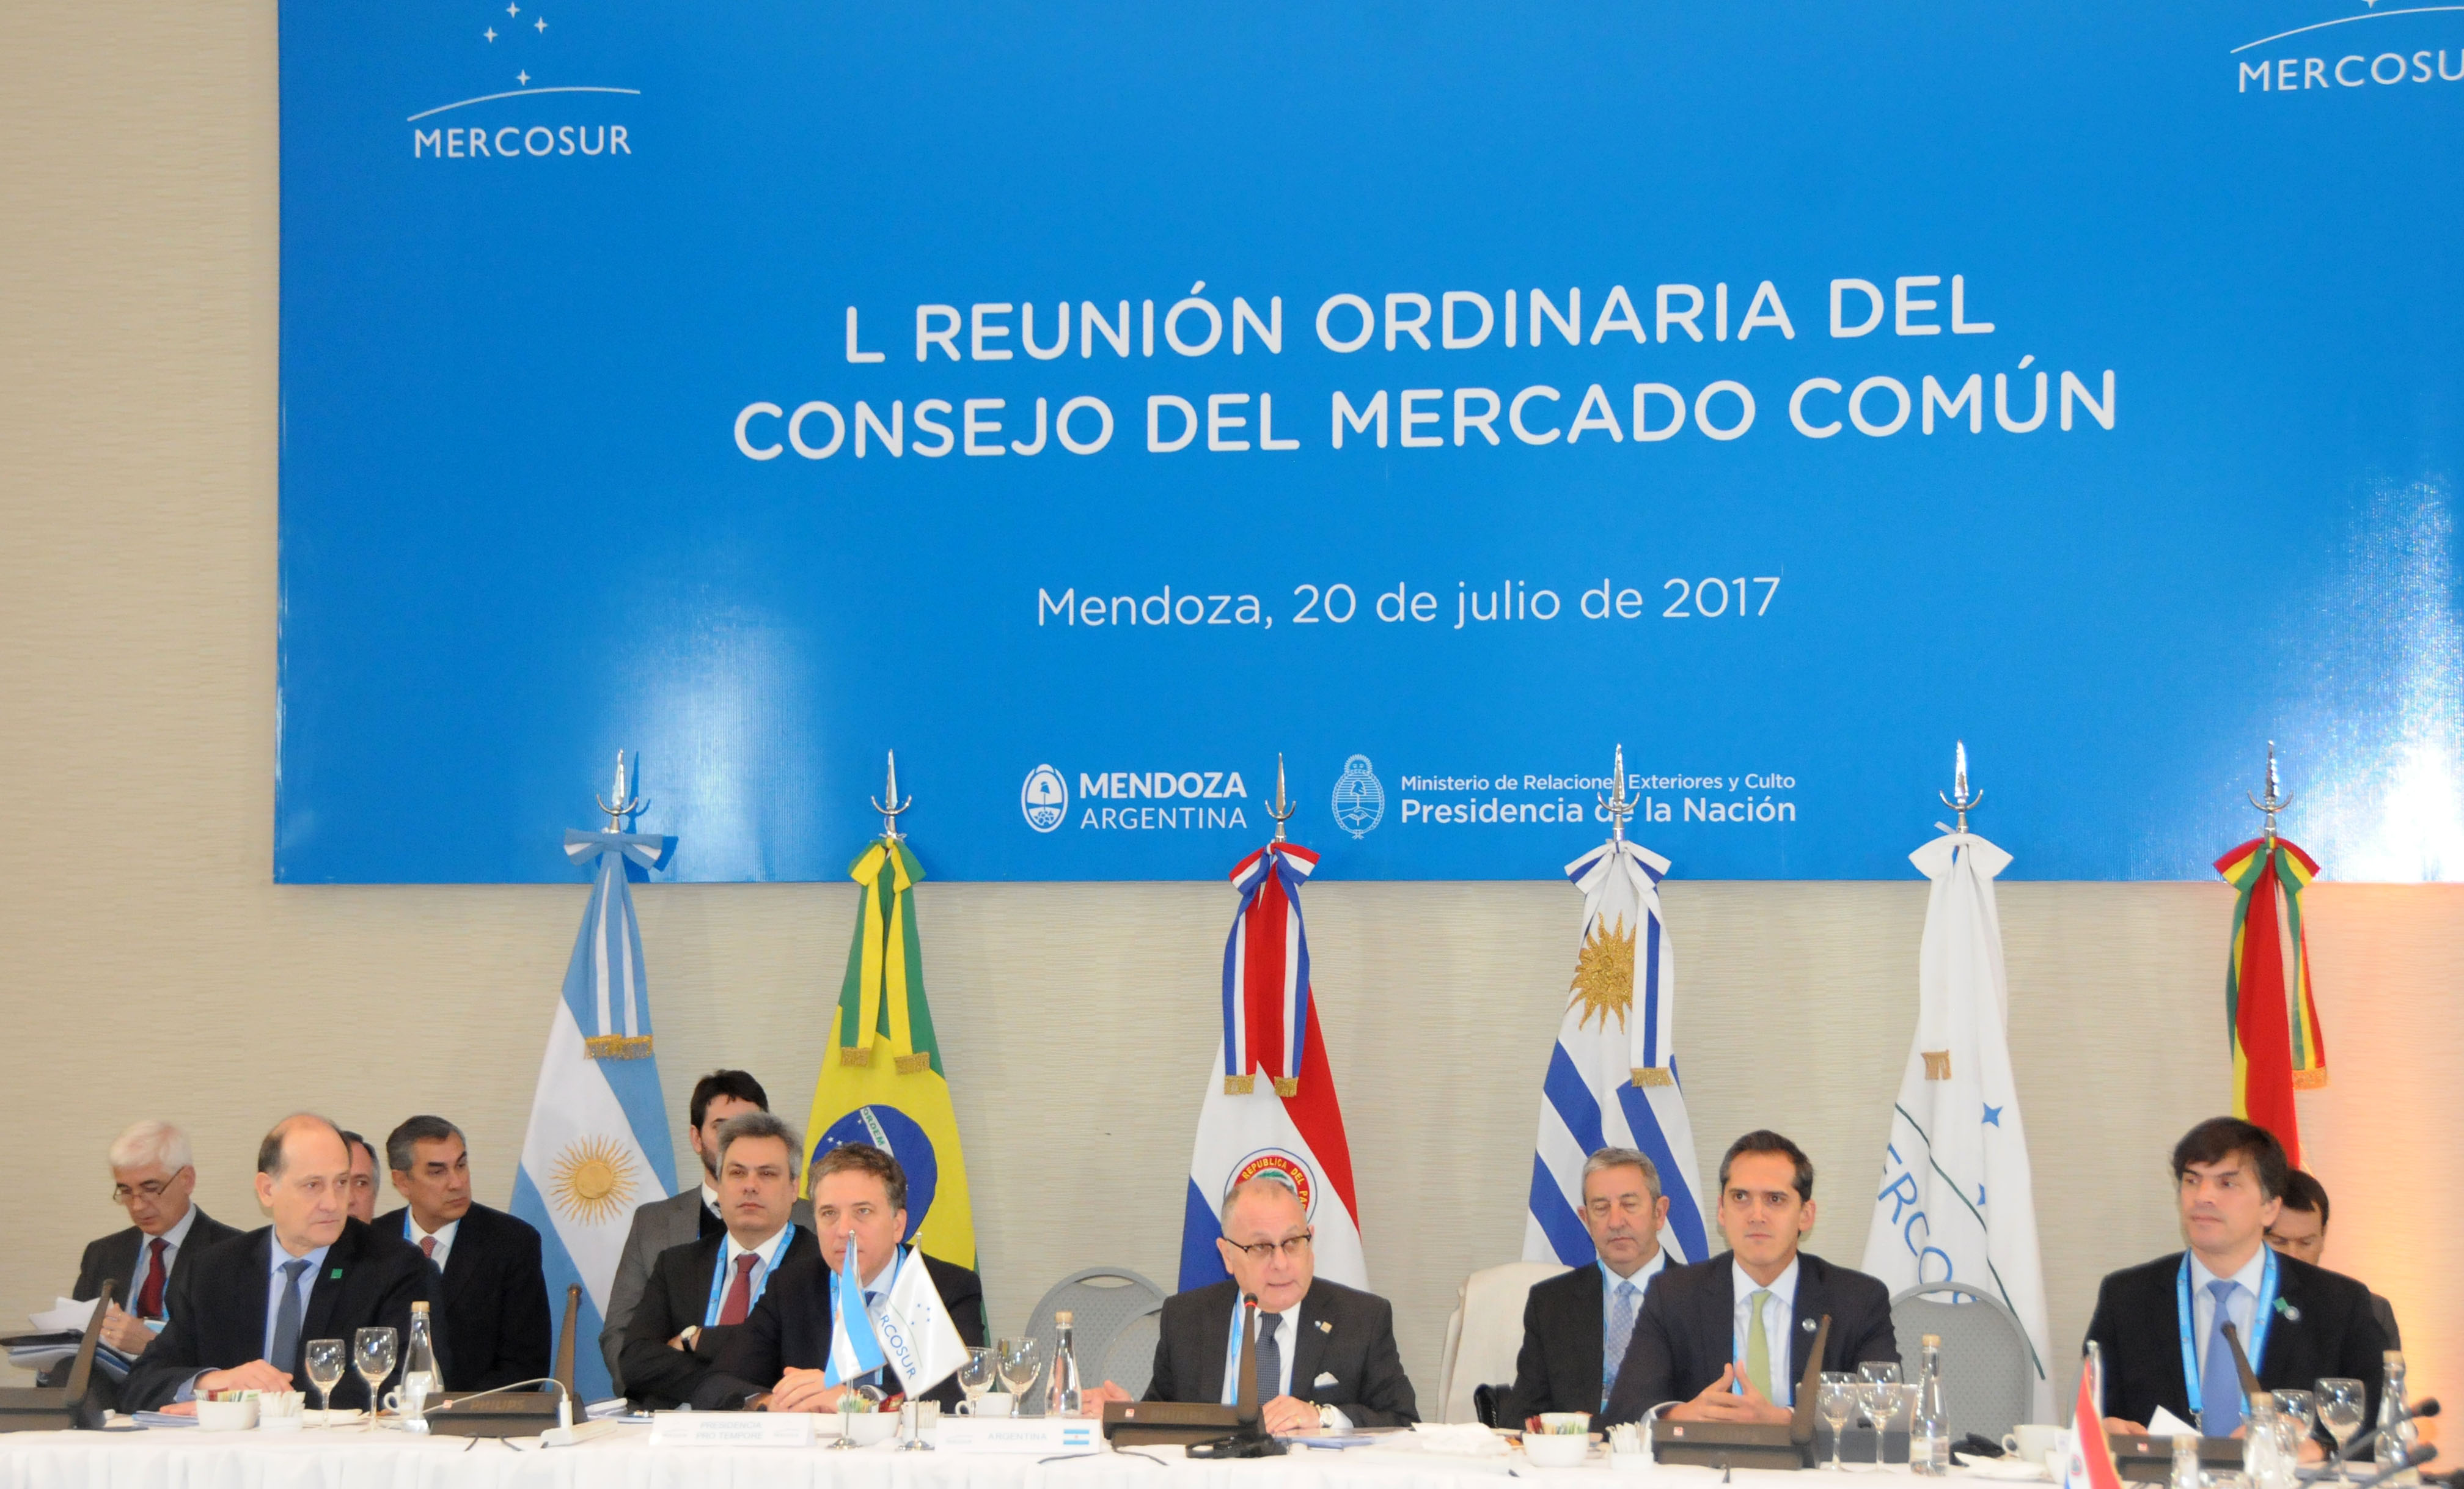 reuni-n-del-consejo-mercado-com-n-del-mercosur-uruguay-presidencia